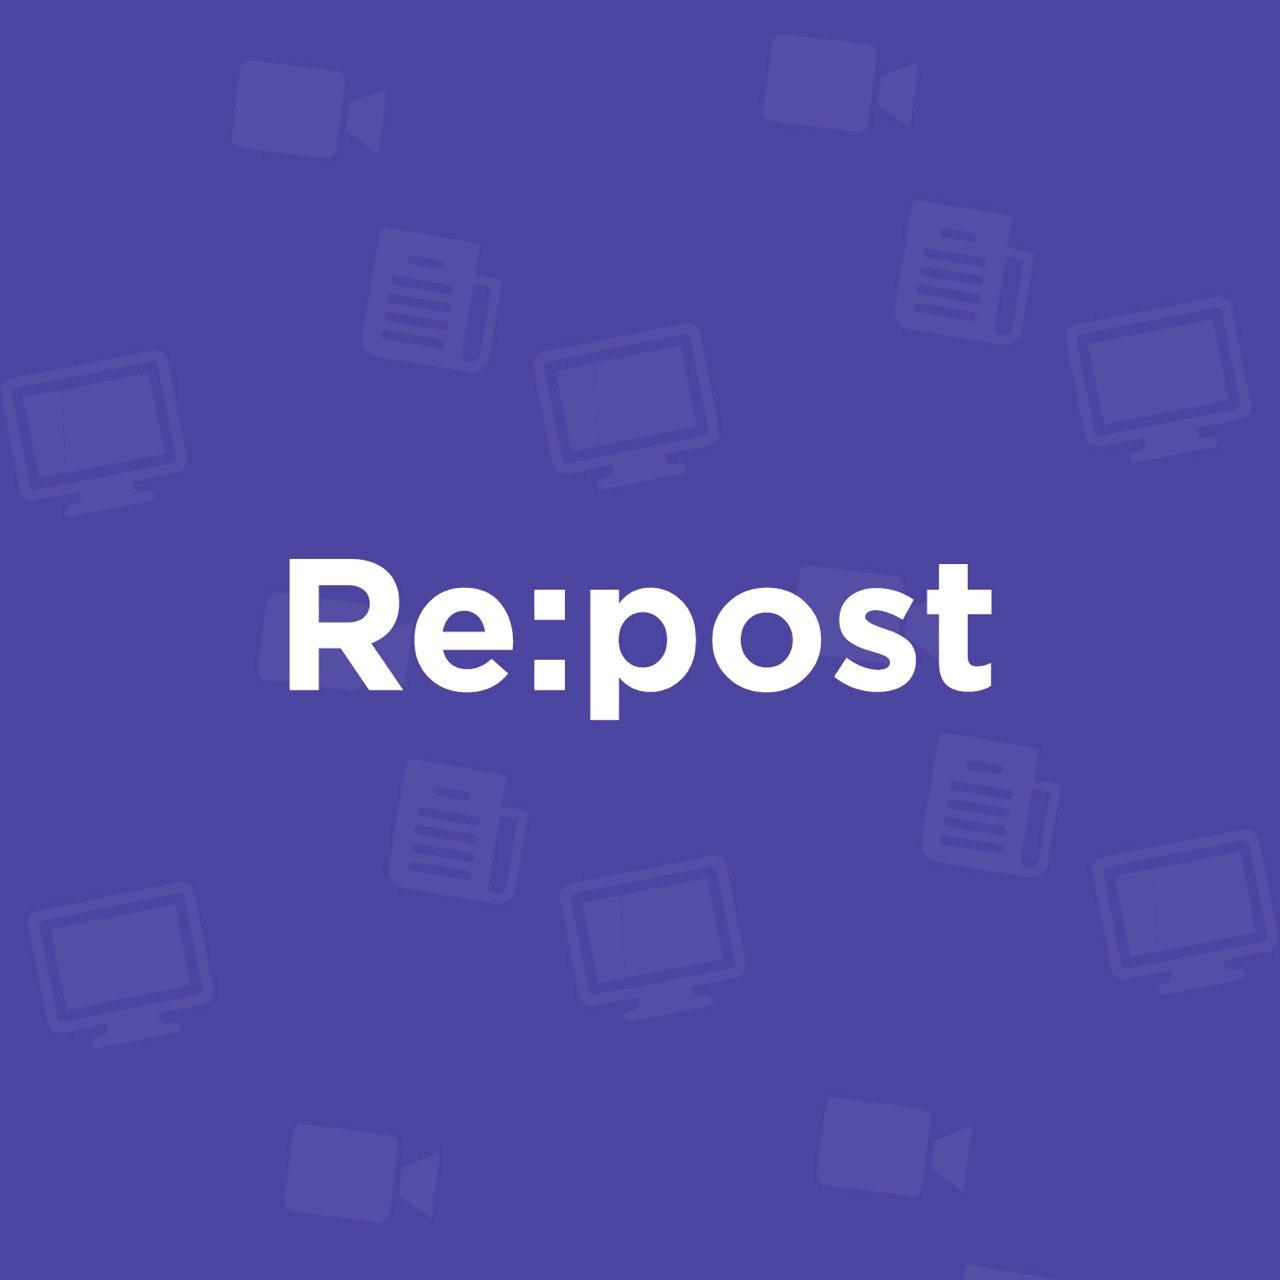 Онлайн-издание Repost.uz поможет выгодно разместить рекламу и поднять продажи вашего продукта